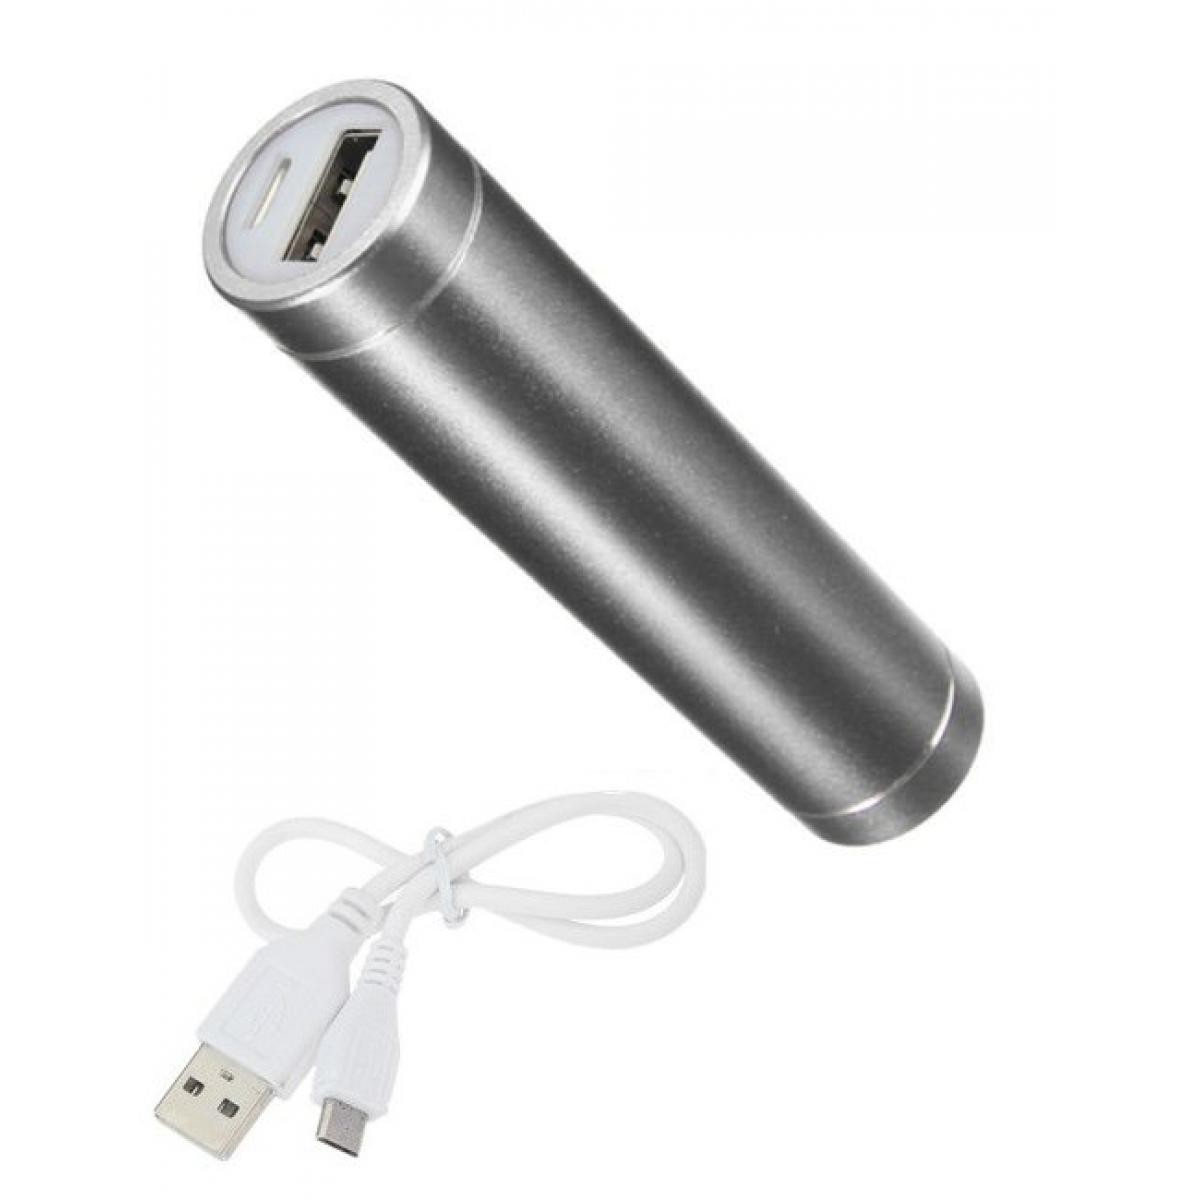 Shot - Batterie Chargeur Externe pour HUAWEI P40 Pro Power Bank 2600mAh avec Cable USB/Mirco USB Secours Telephone (ARGENT) - Chargeur secteur téléphone